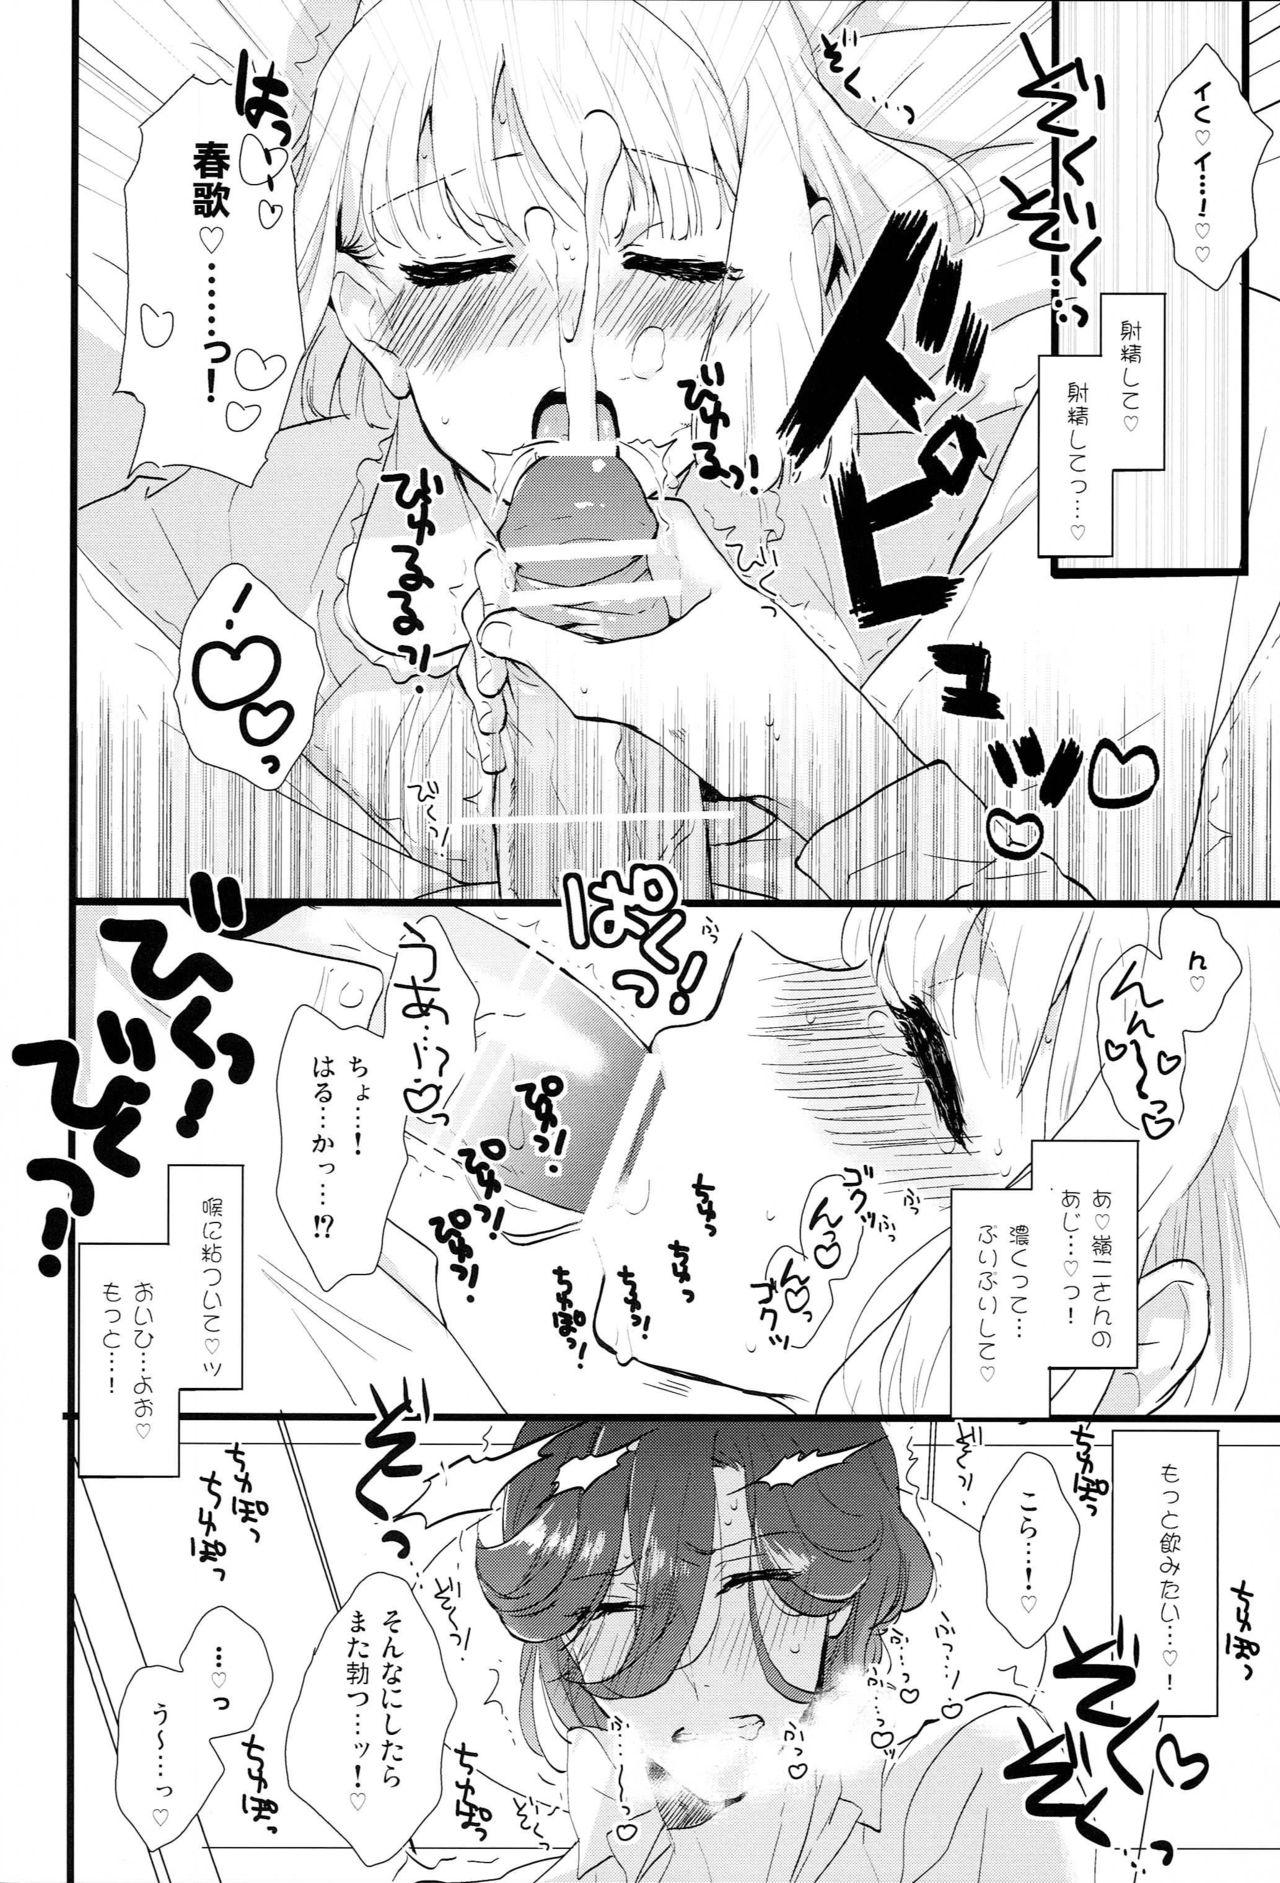 Huge ICECANDY KISS - Uta no prince sama Mas - Page 5